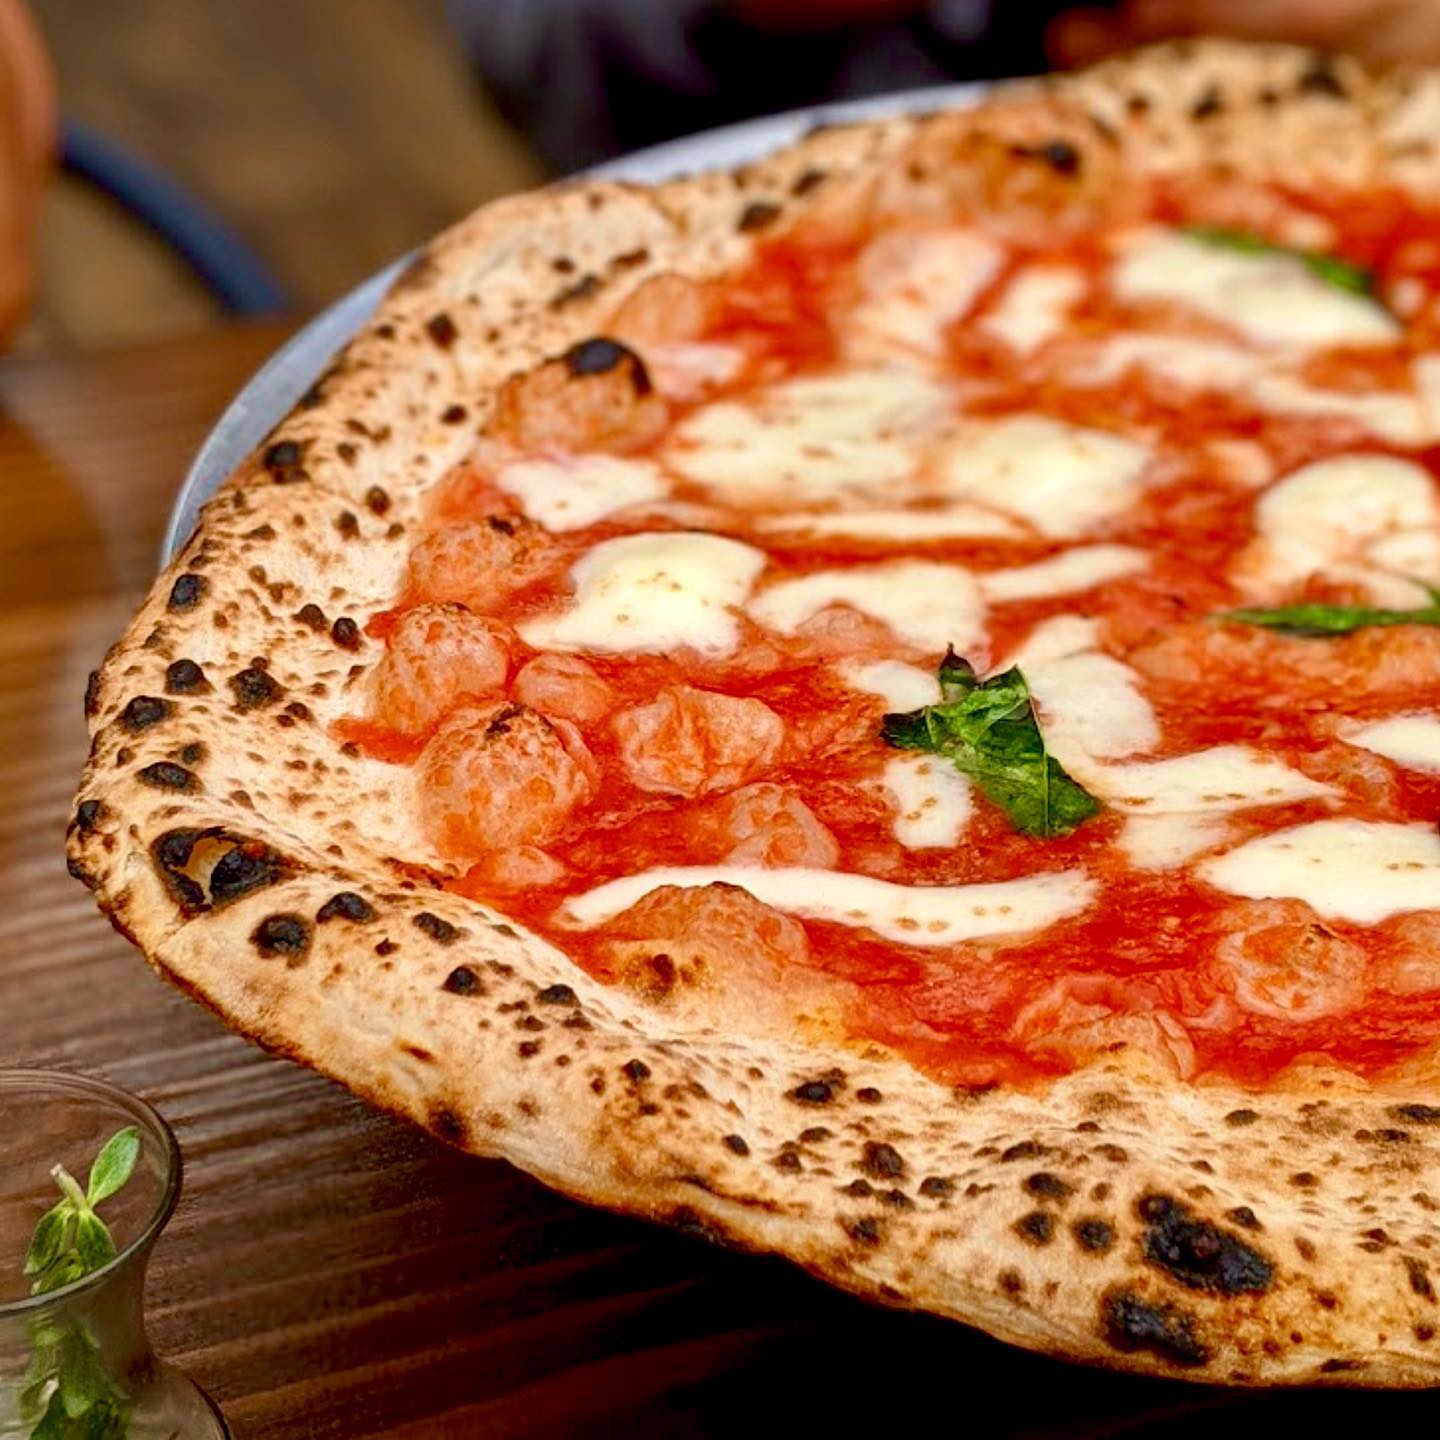 Find out more about L'antica Pizzeria da Michele